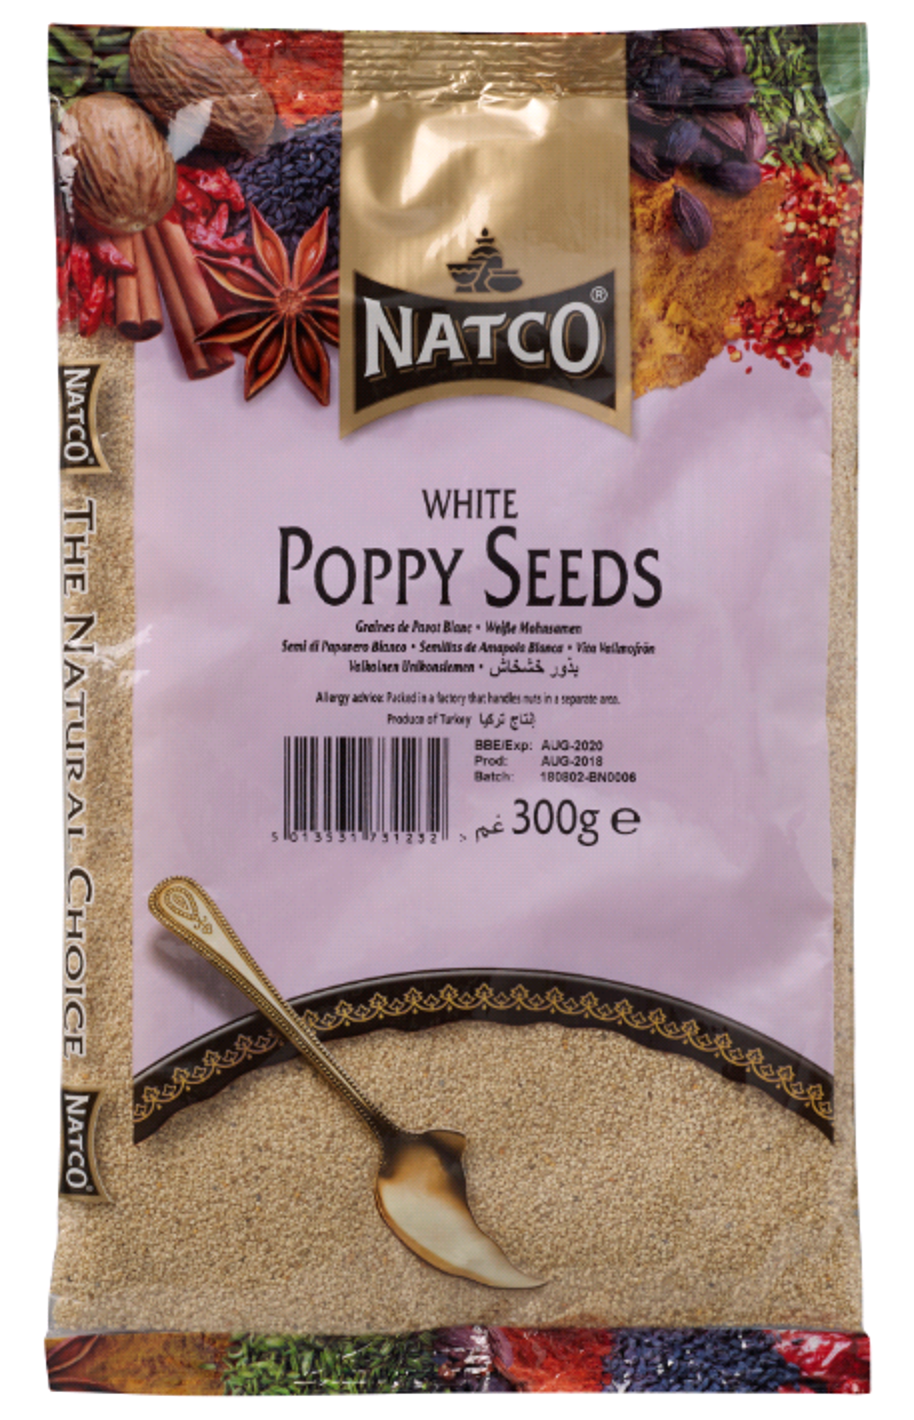 White Poppy Seeds 300g